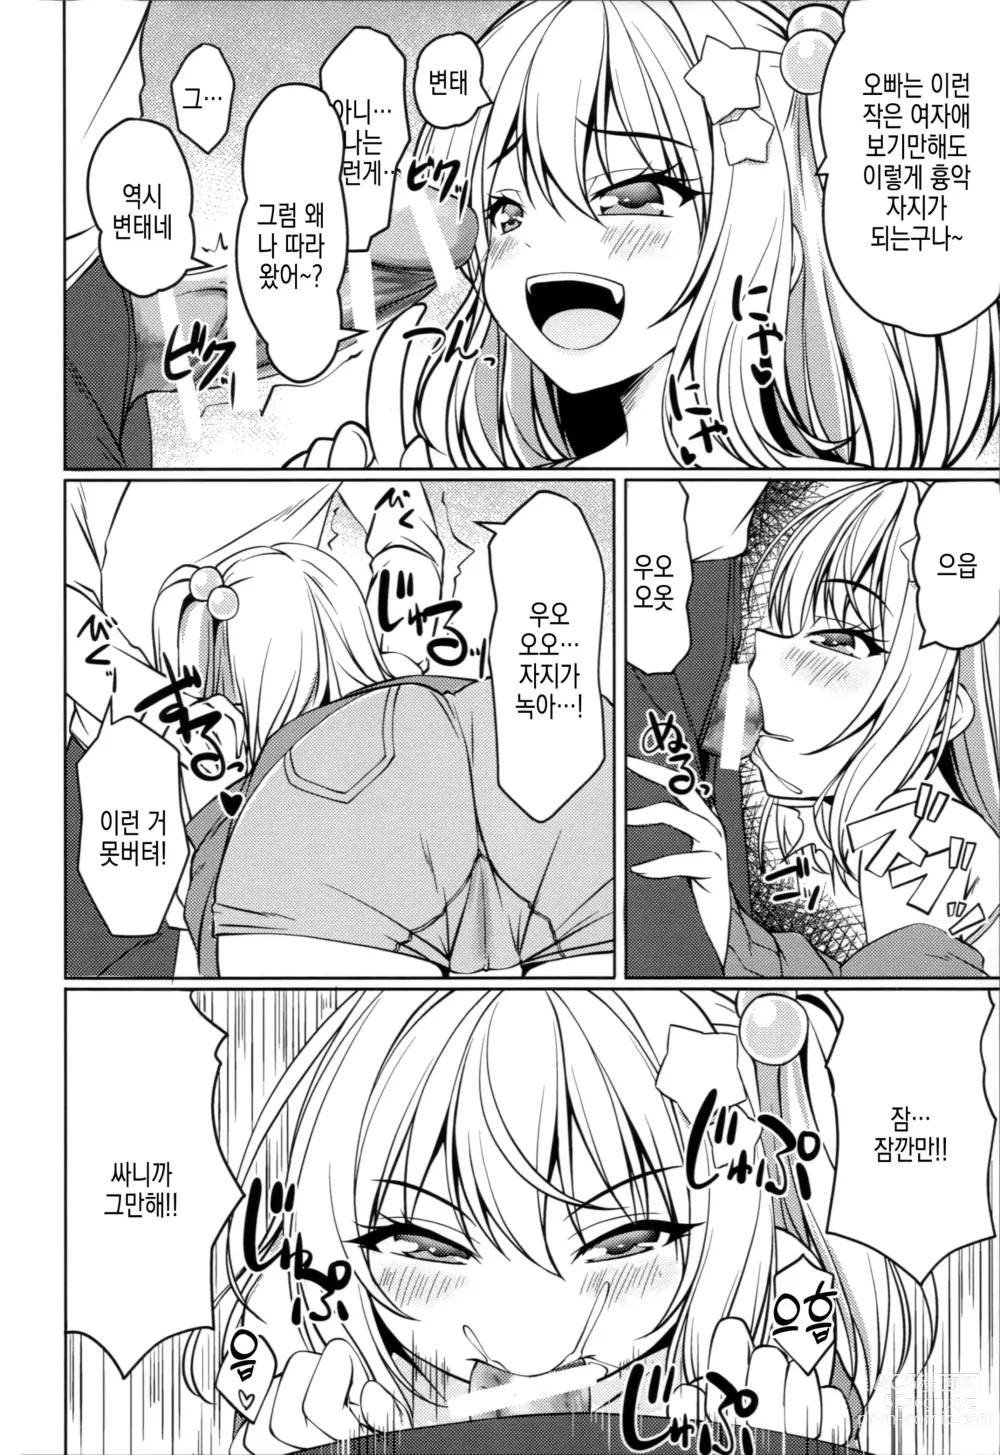 Page 6 of doujinshi 암컷꼬맹이 플랑을 참교육하자